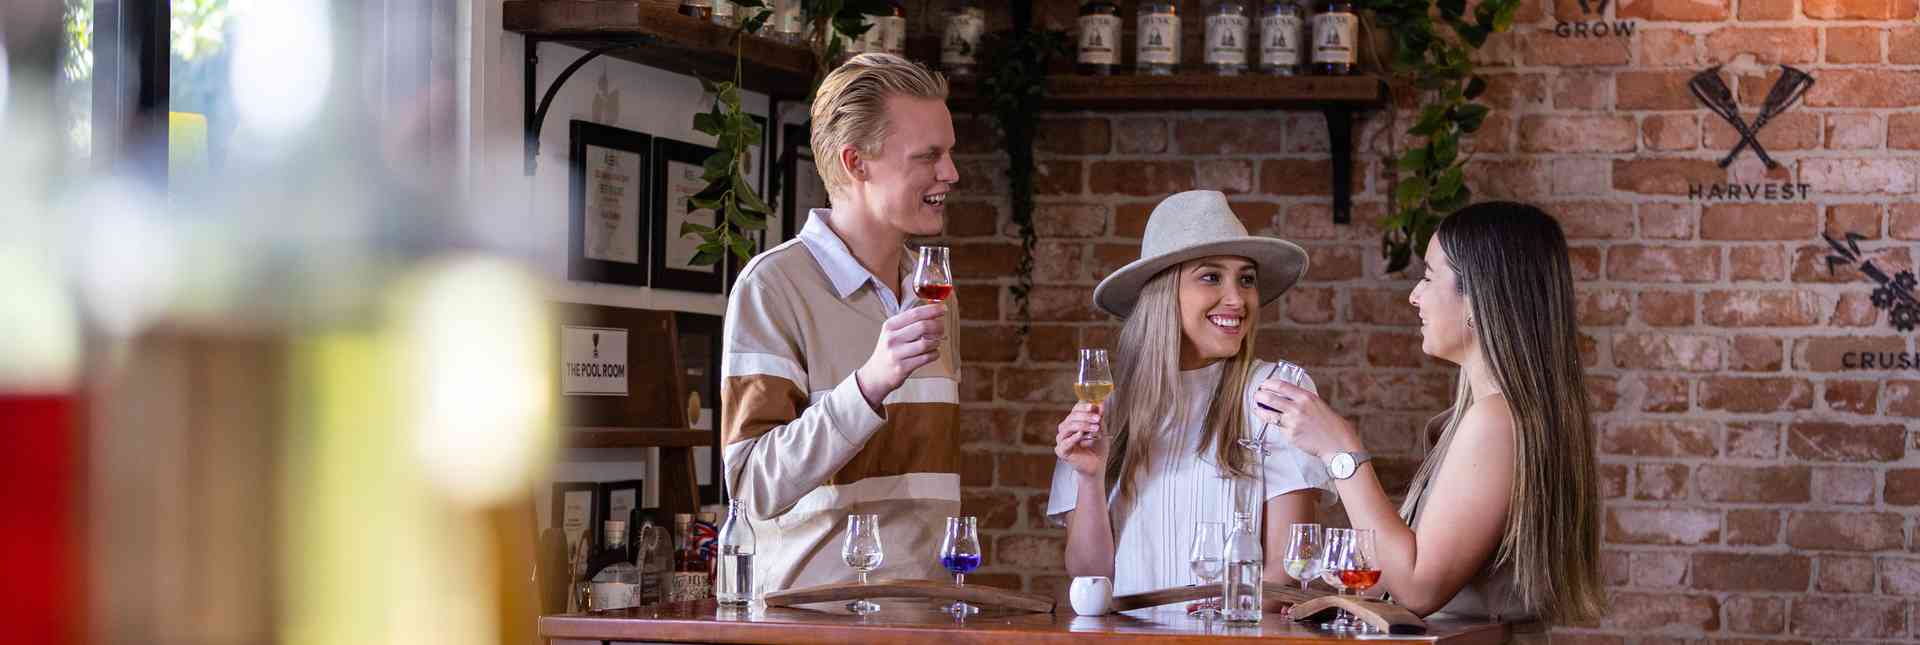 The Best Gold Coast Breweries, Wineries & Distilleries